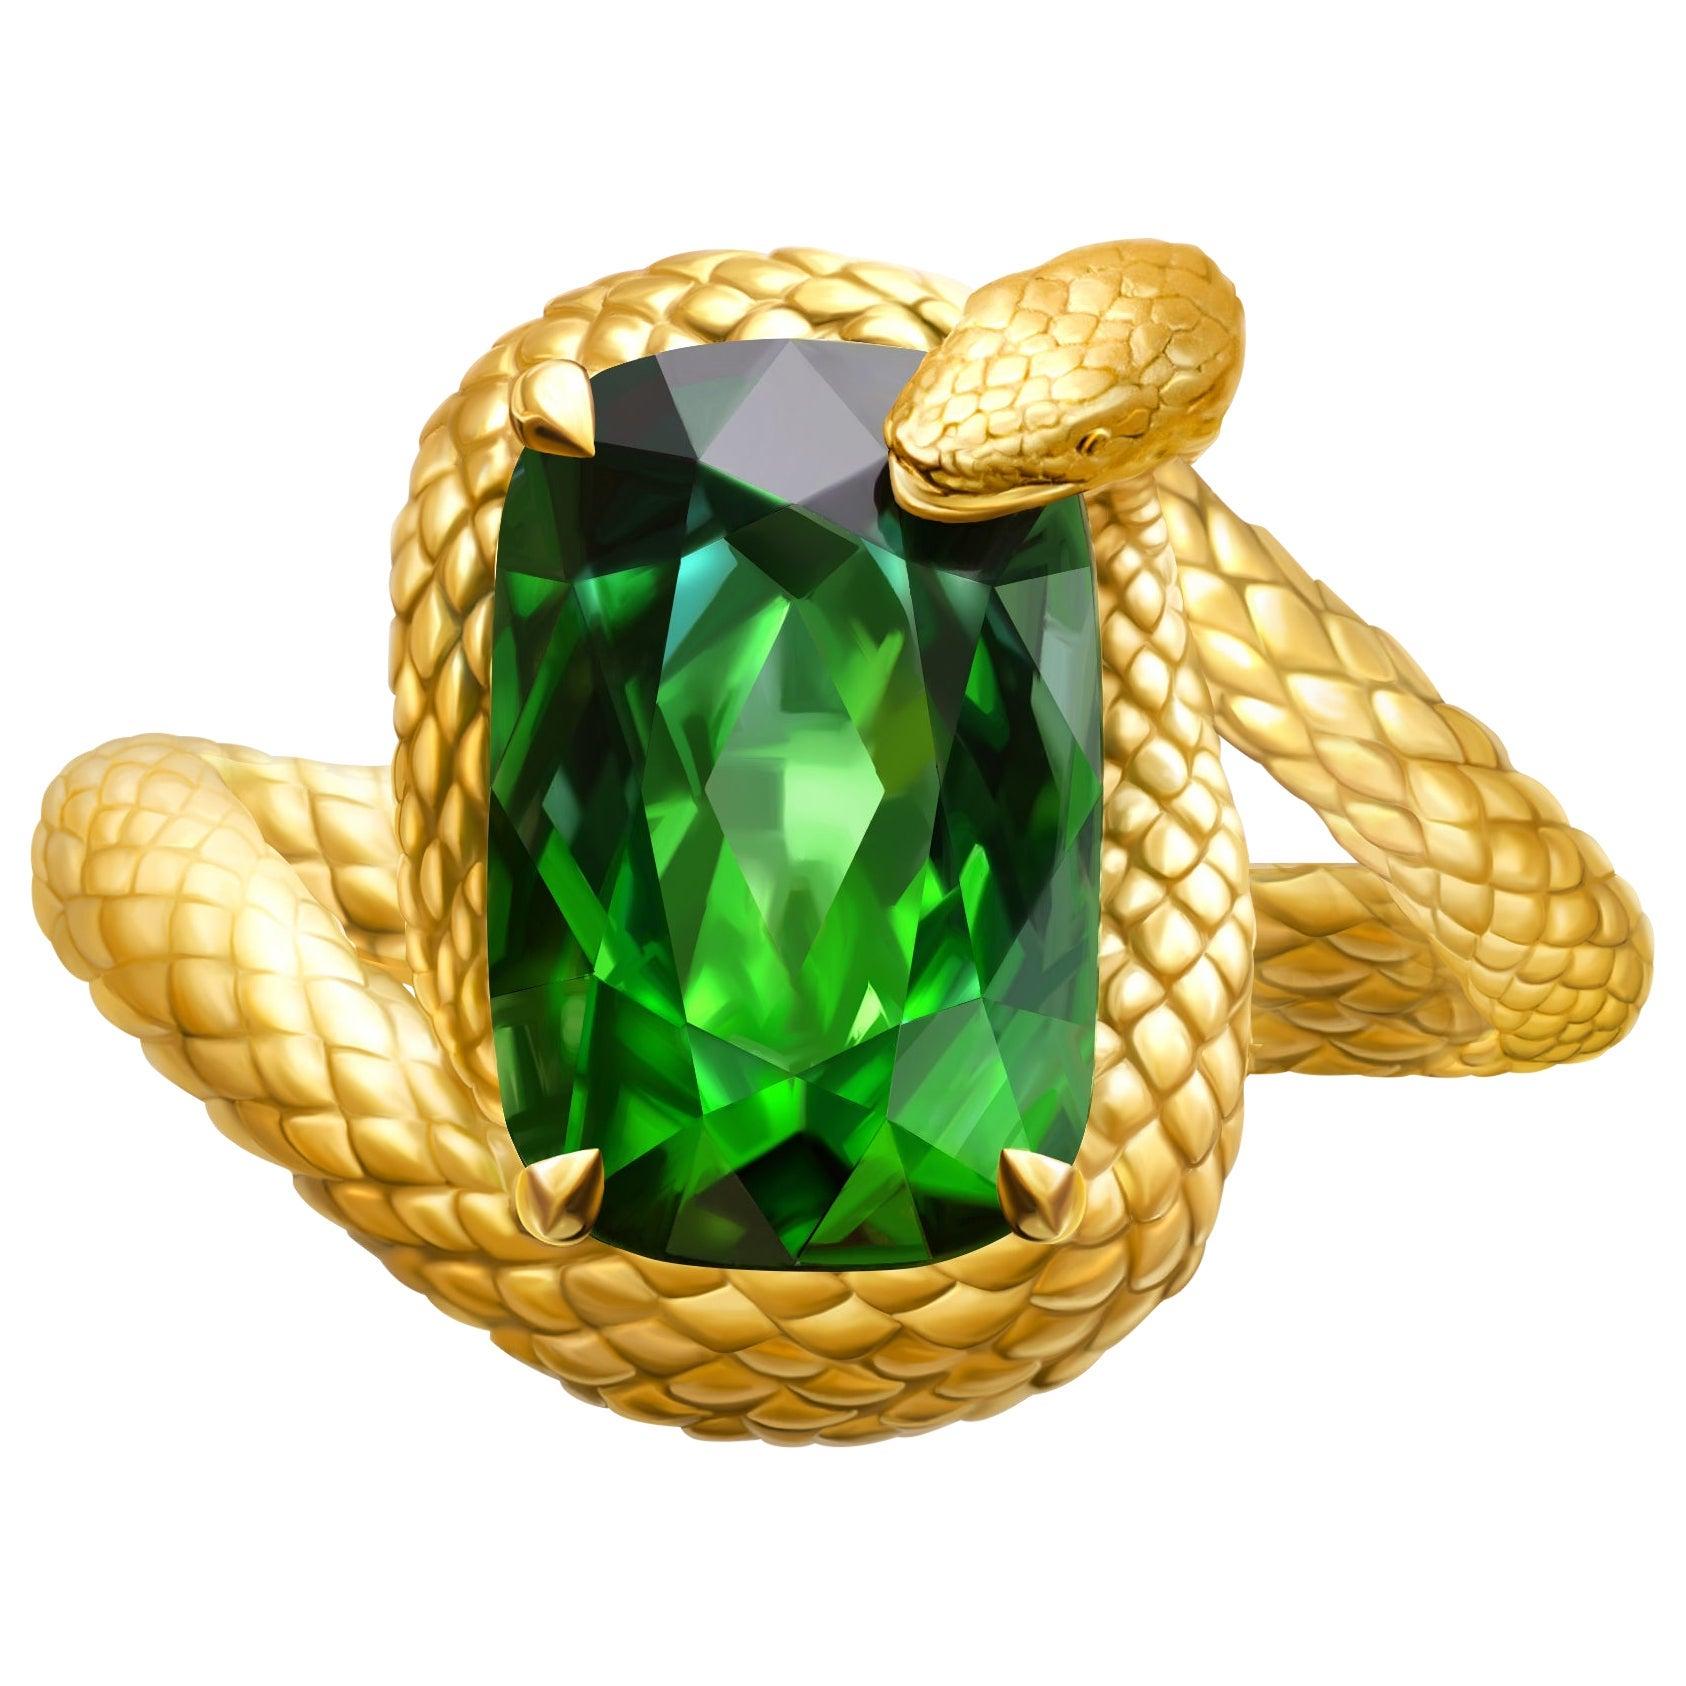 For Sale:  "Snake" Ring 6.6 Carat Intense Green Tourmaline 18 Karat Yellow Gold